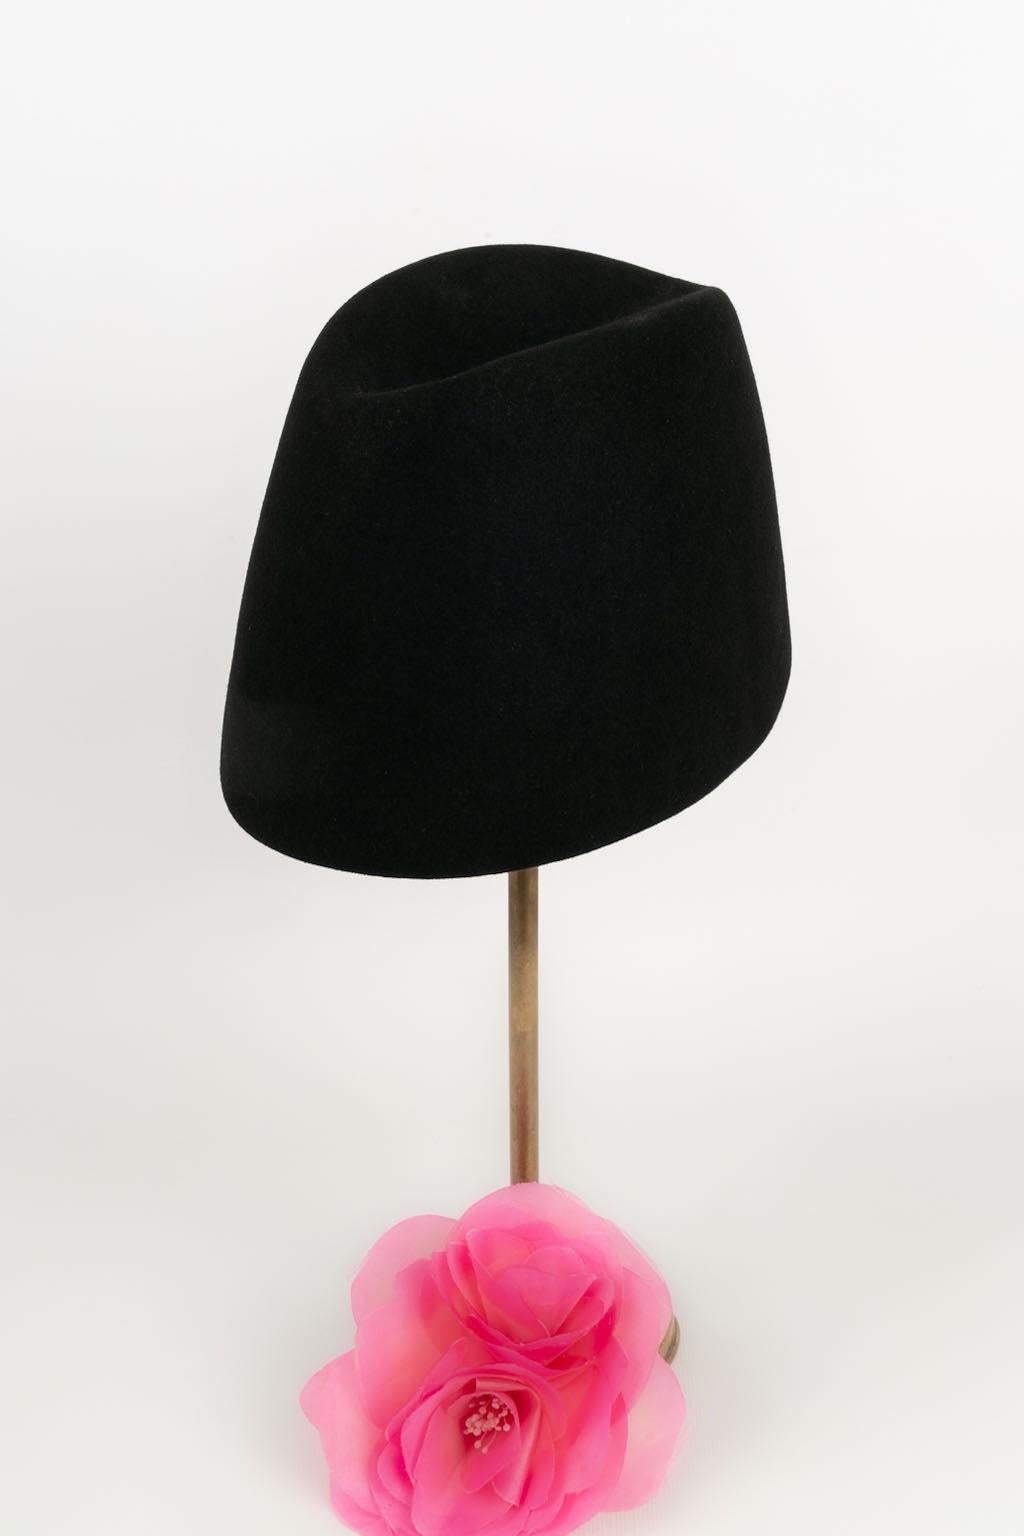 Yves Saint Laurent Fez Hat in Black Felt 6